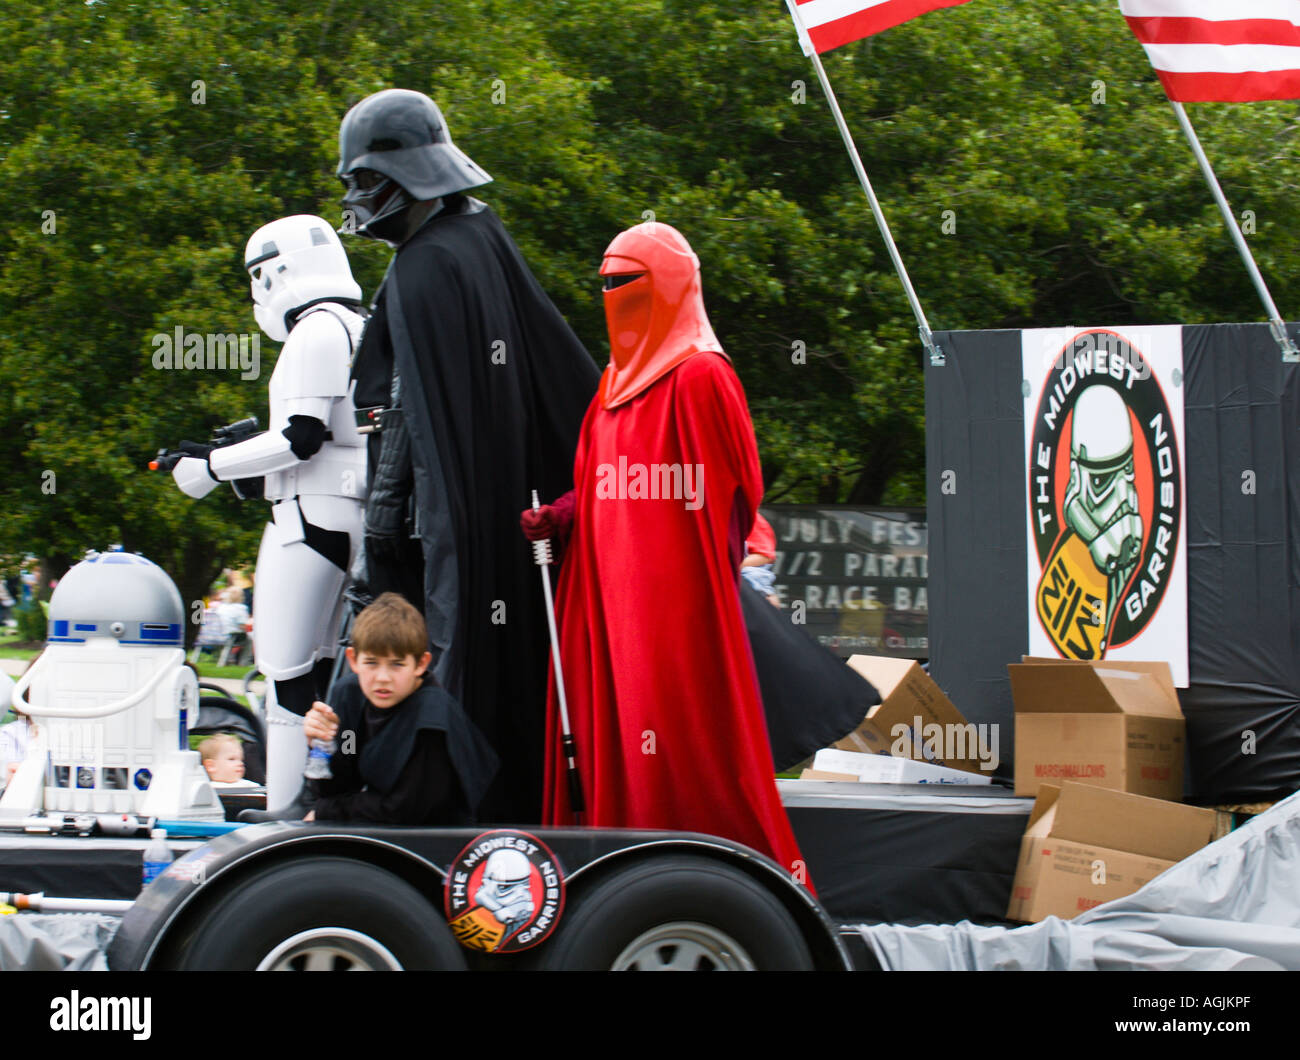 Consejo procedimiento Espacio cibernético R2D2, Darth Vader un Stormtrooper un guardia real de emperadores y Anakin  Skywalker Fotografía de stock - Alamy